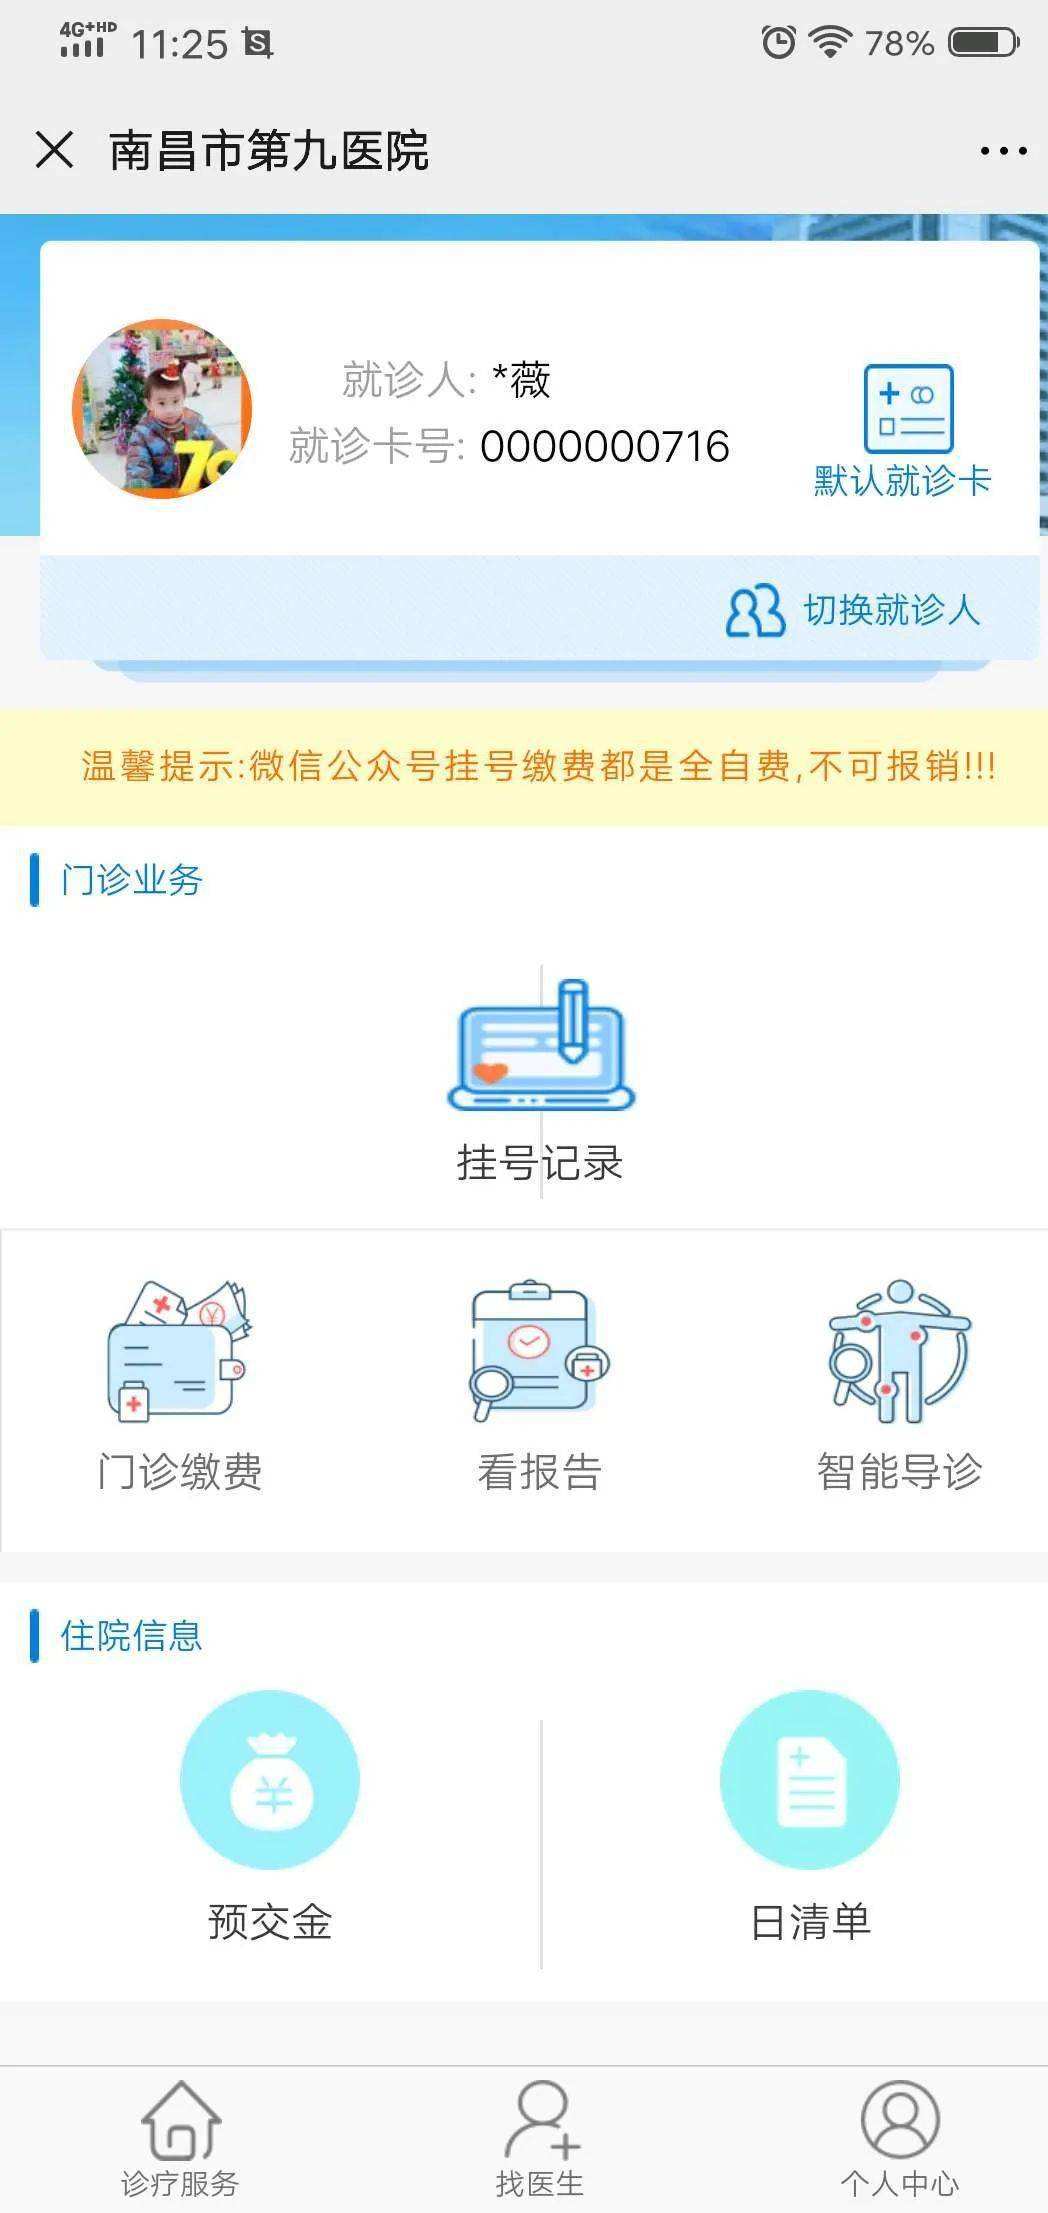 包含北京电力医院号贩子挂号,安全快速有效联系方式优质服务的词条